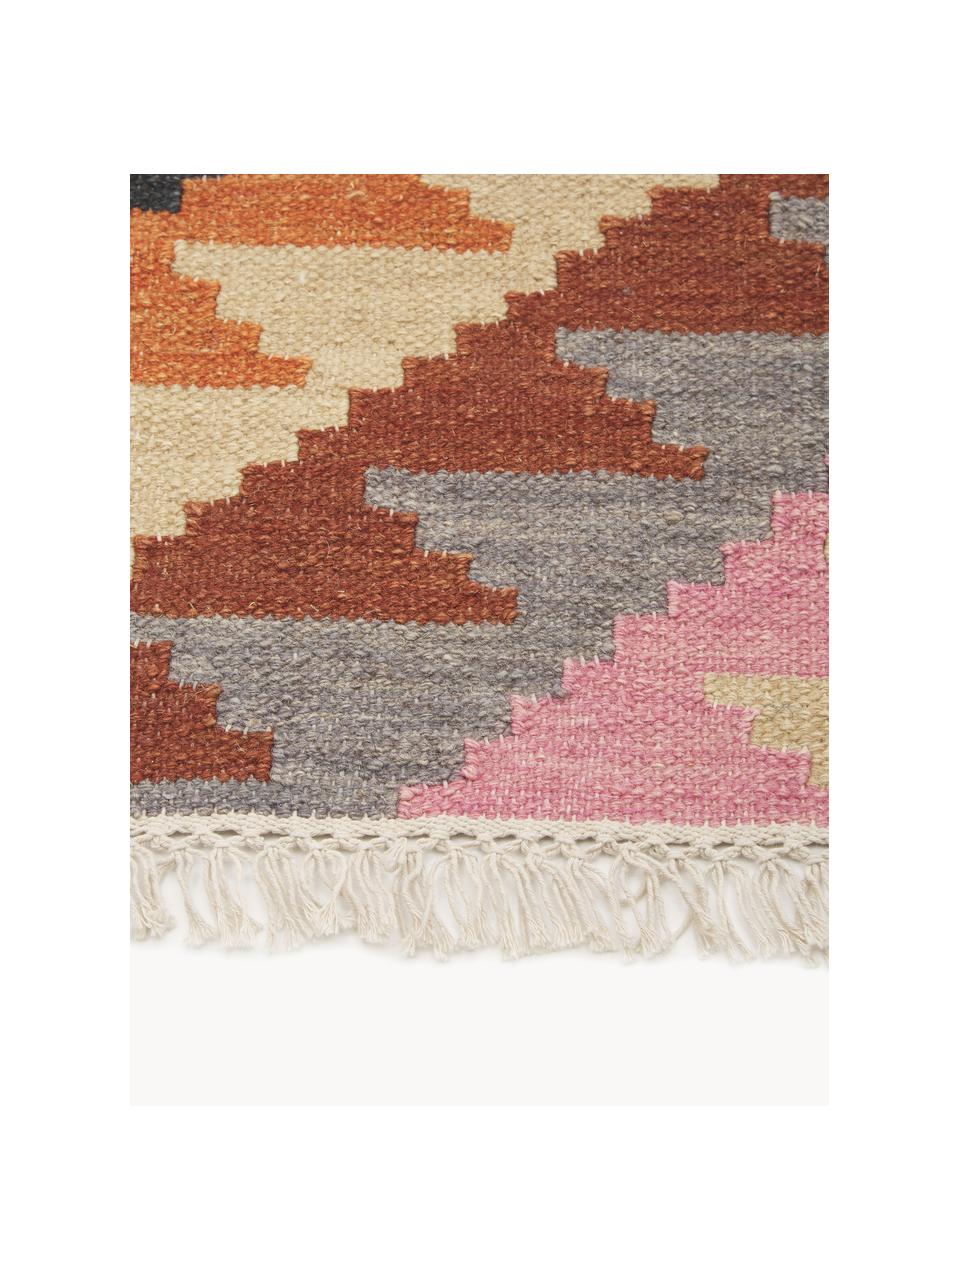 Tappeto kilim in lana tessuto a mano Zenda, 100% lana, Multicolore, Larg. 120 x Lung. 180 cm (taglia S)